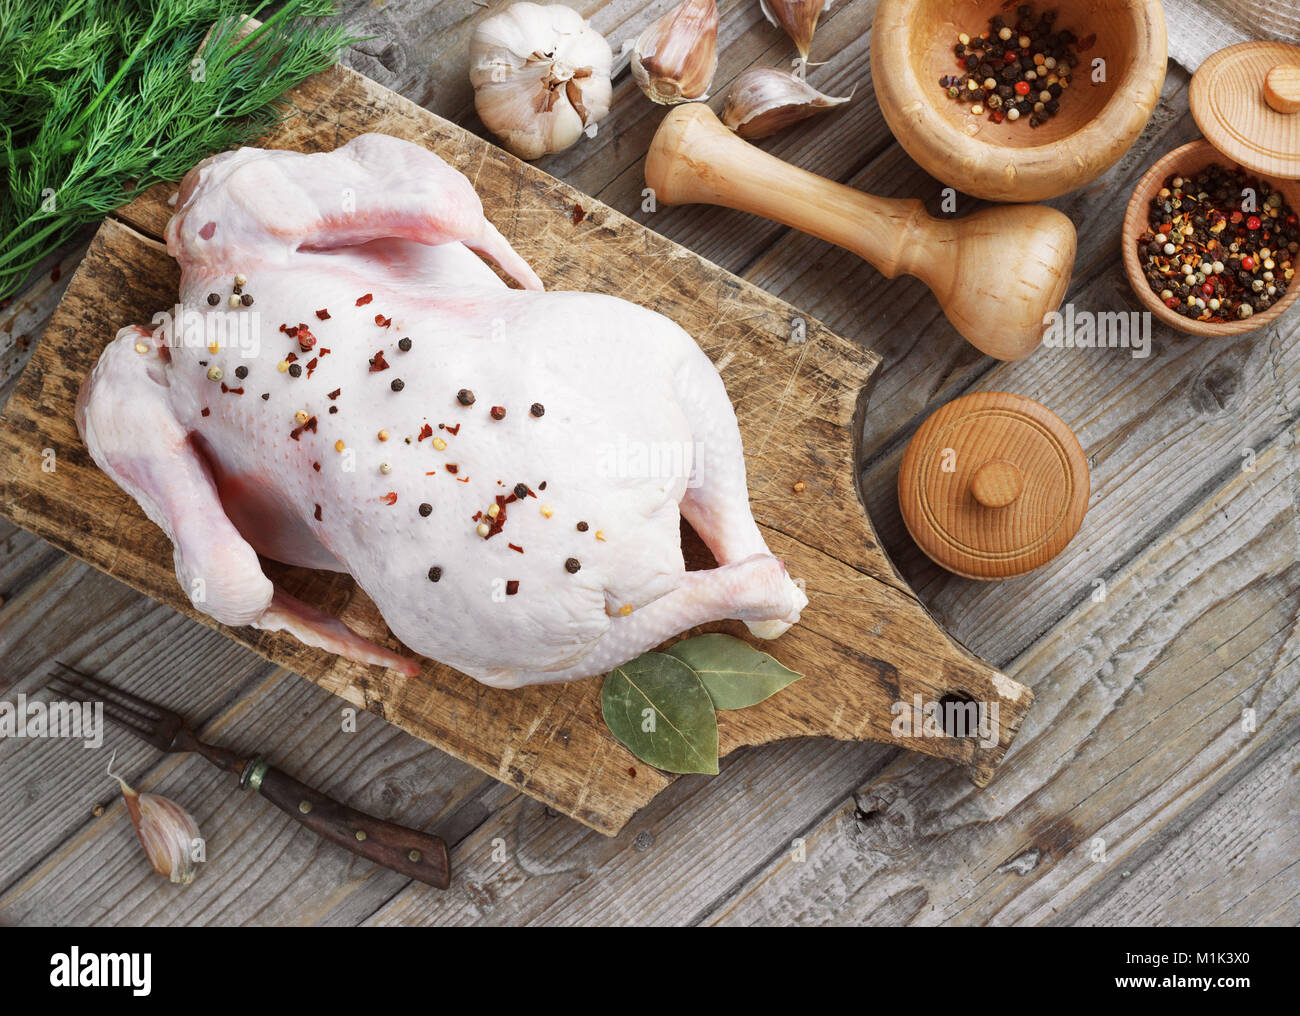 Carcasse de poulet sur un fond de bois avec des épices, la cuisine dans la cuisine, style rustique. Banque D'Images